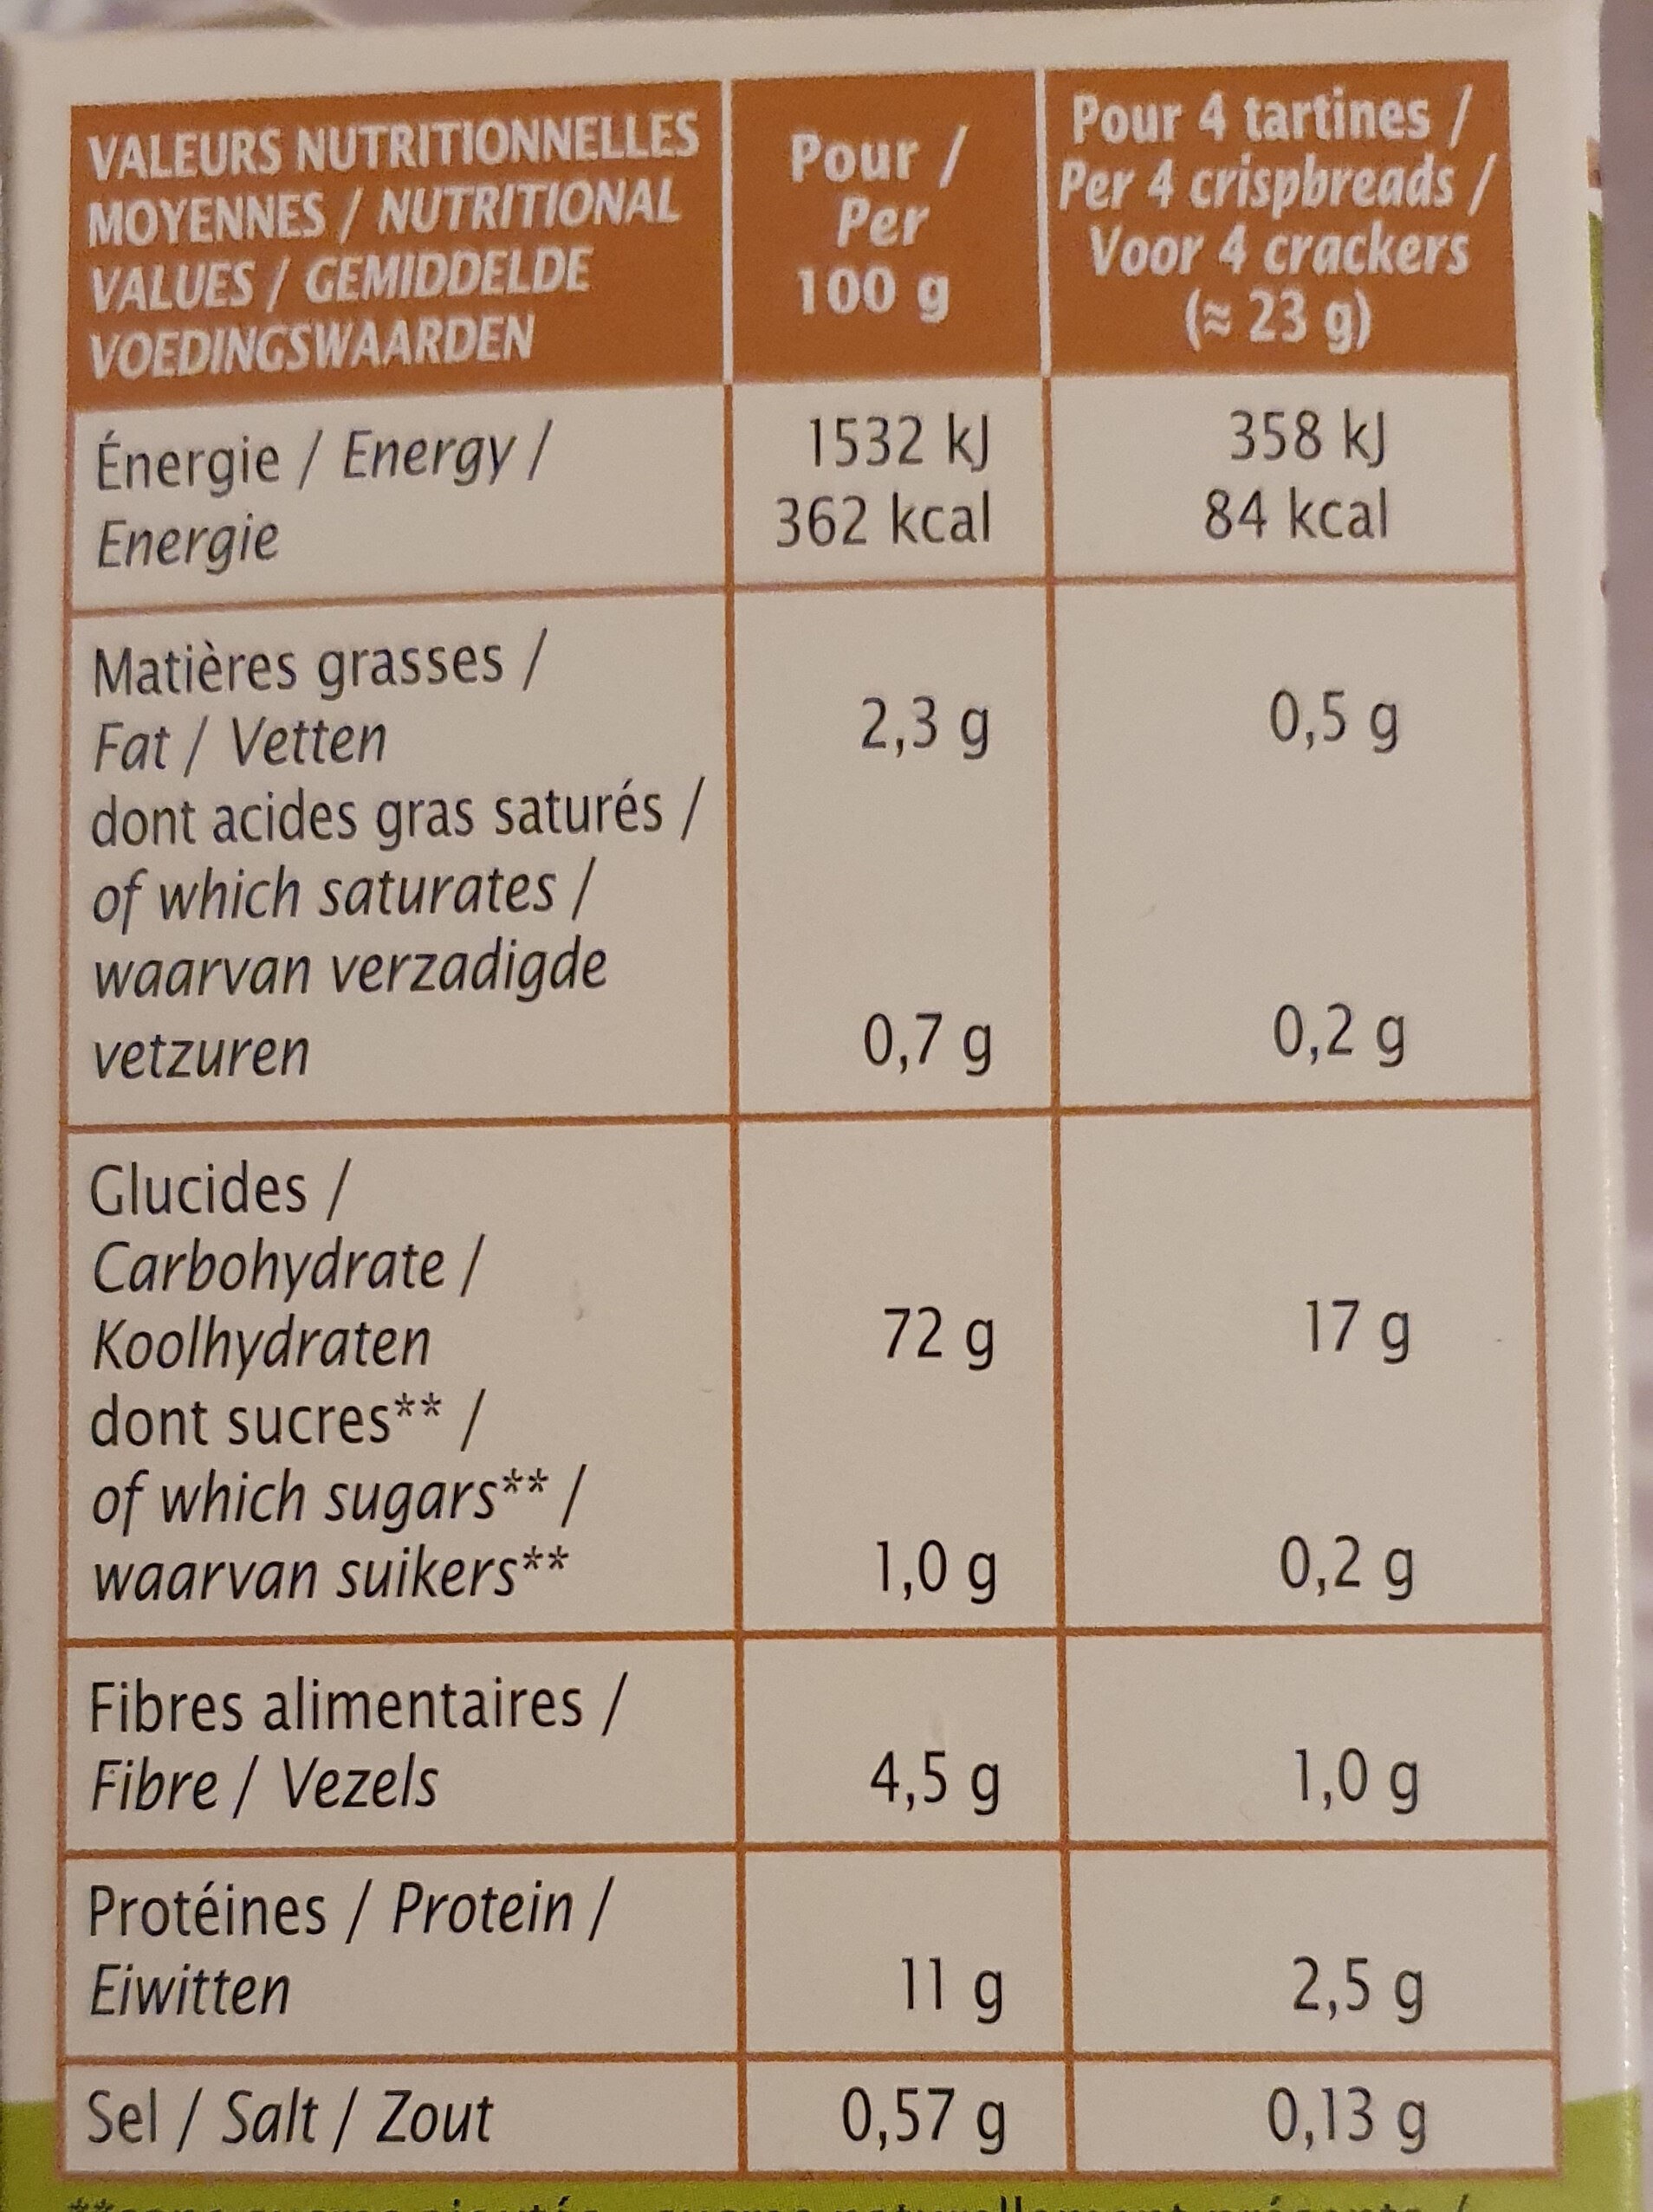 Tartines craquantes Sarrasin - Voedingswaarden - fr